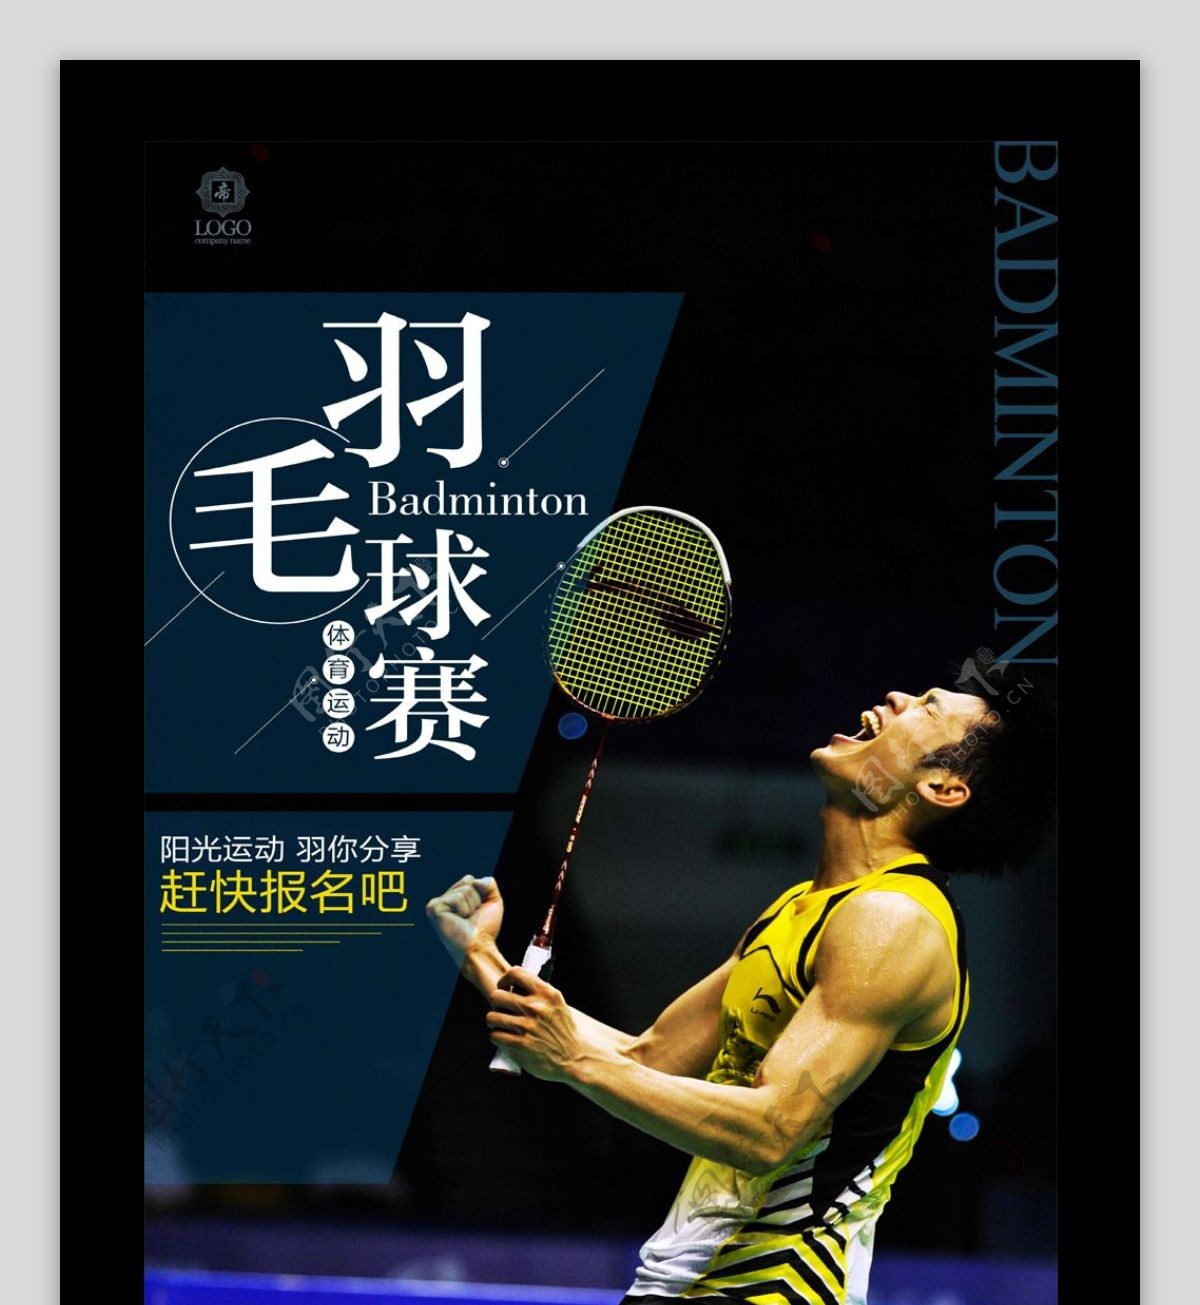 羽毛球赛体育运动宣传海报